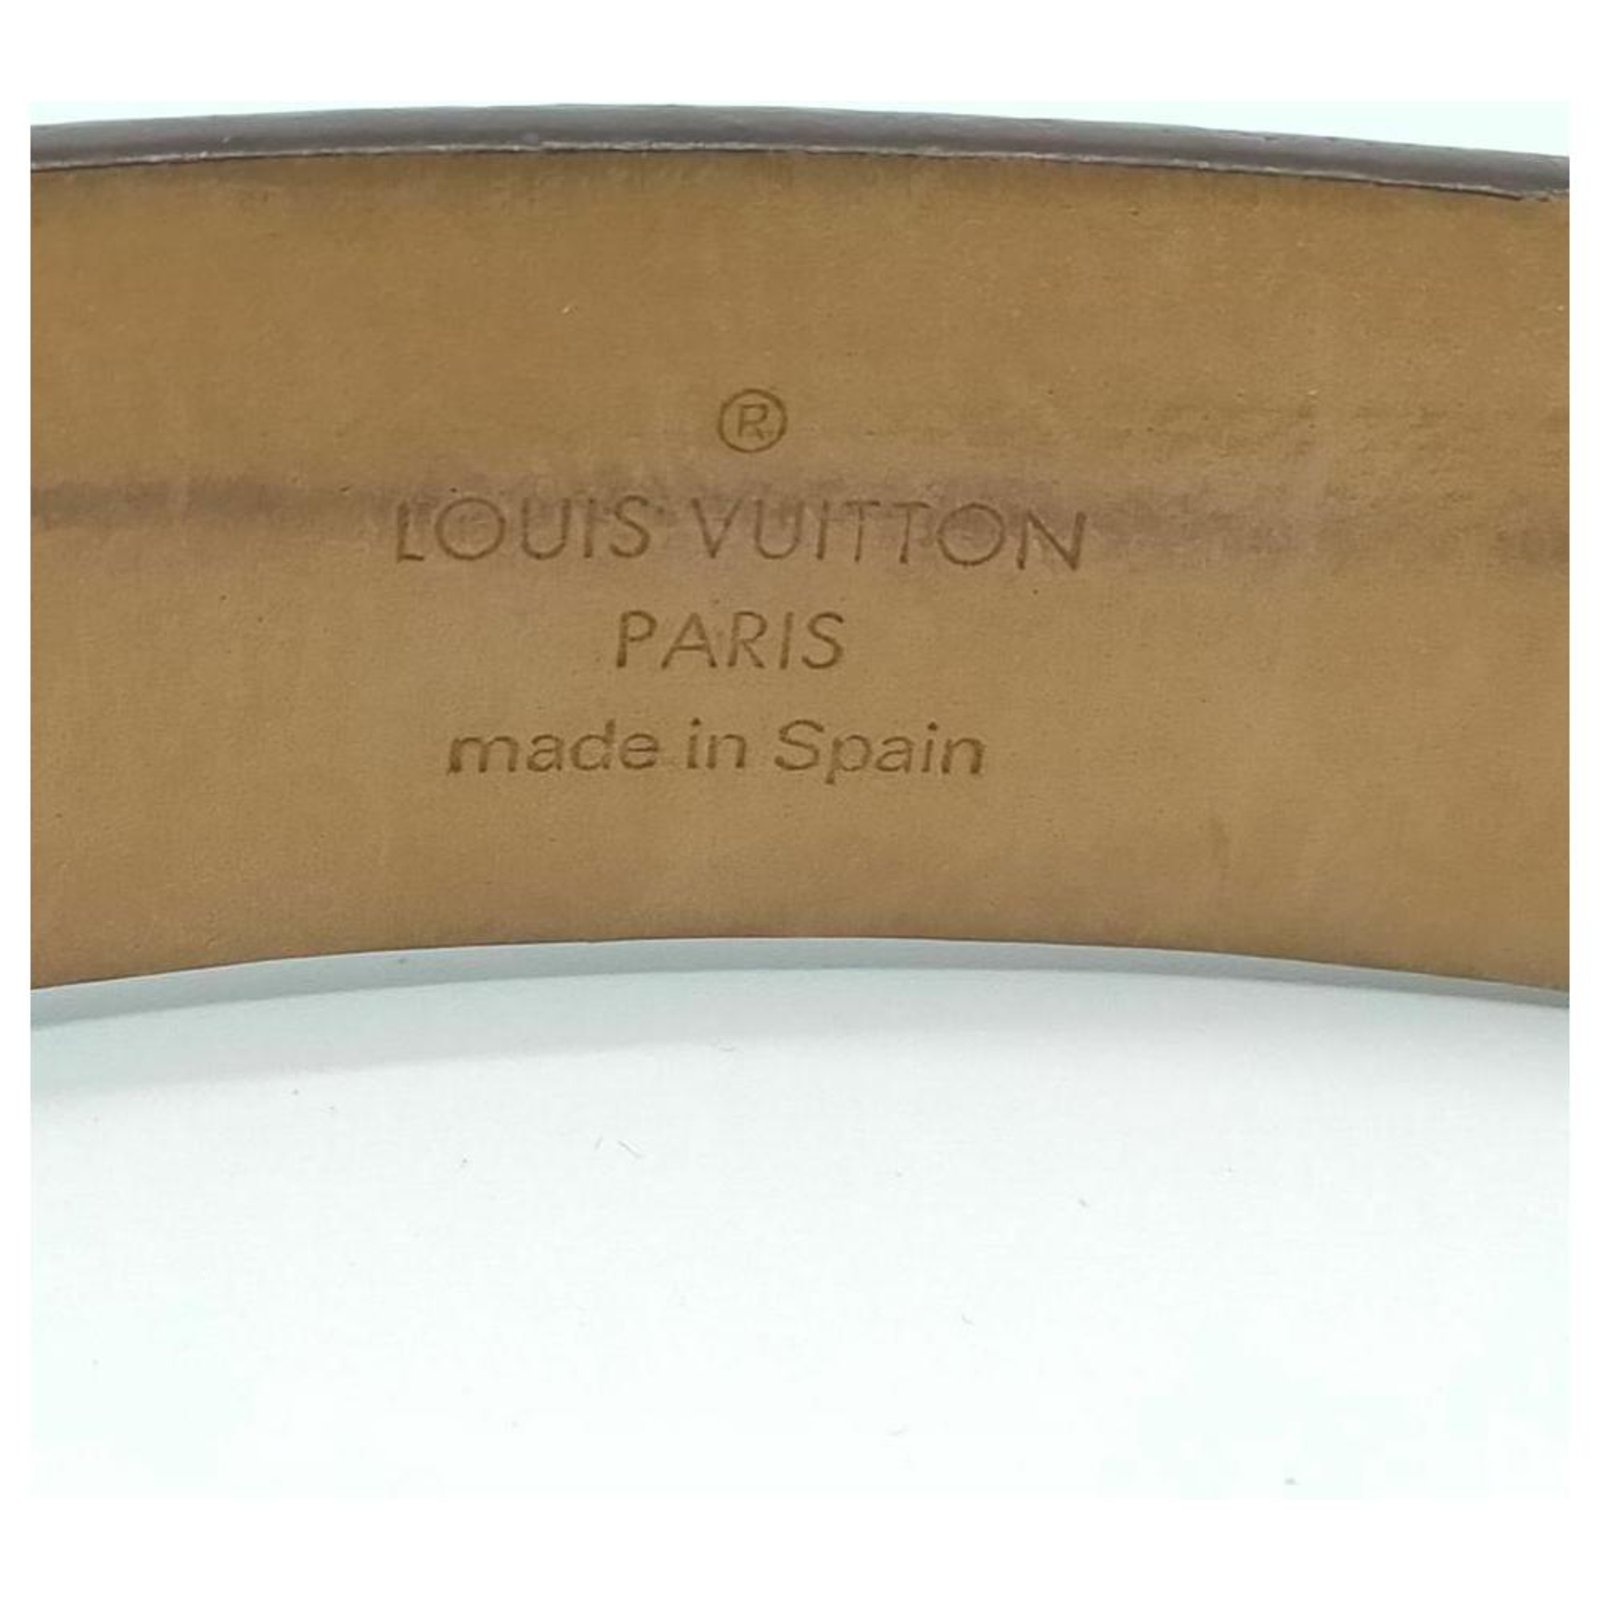 Vintage Louis Vuitton Ceinture Carre Belt - Ruby Lane